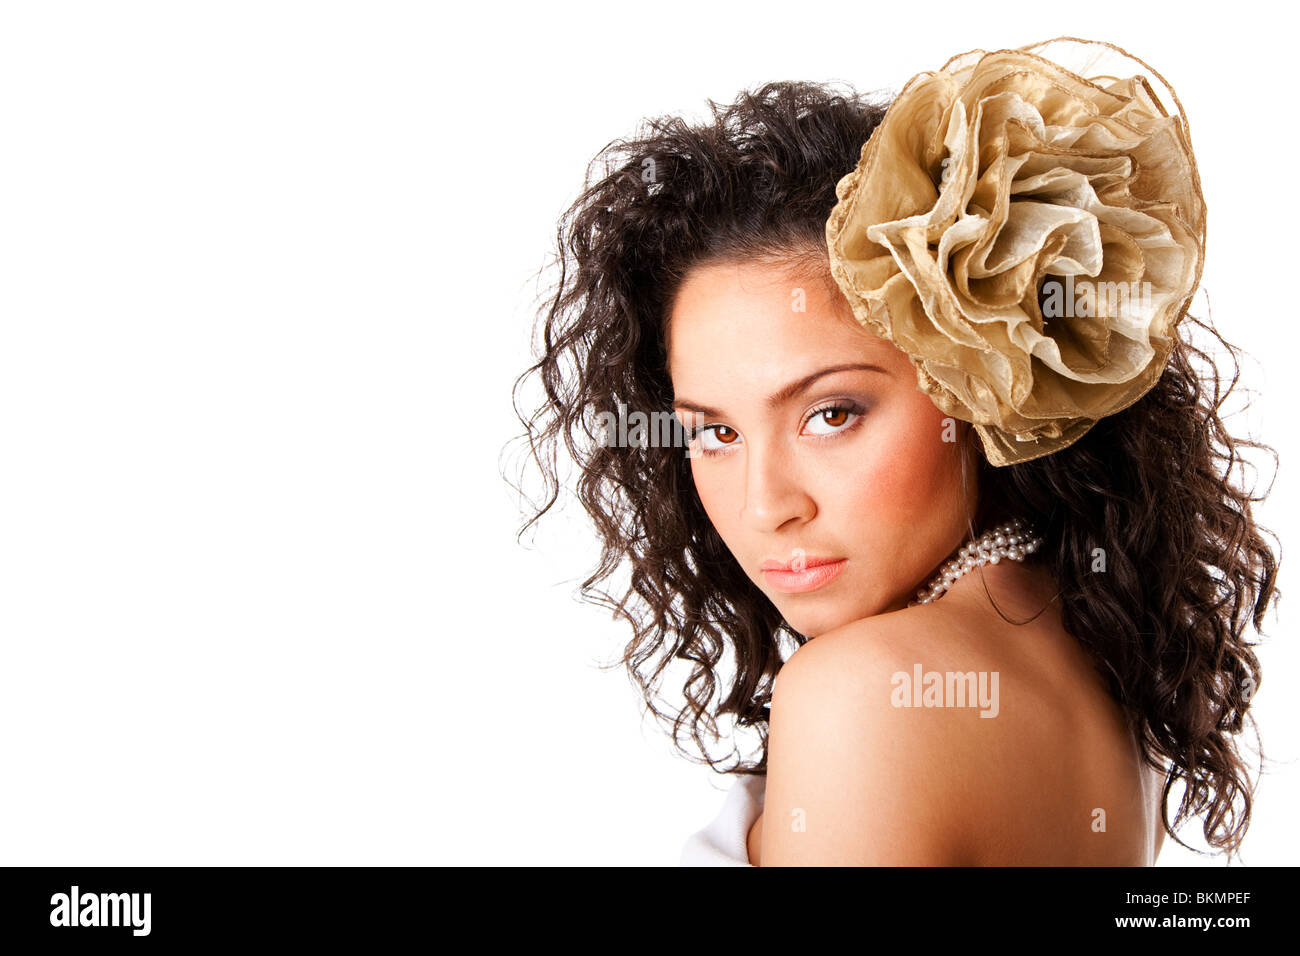 Hermoso rostro de una mujer hispana con caucásicos curtida piel clara, vistiendo un collar de perlas y una falsa flor en el pelo rizado. Foto de stock